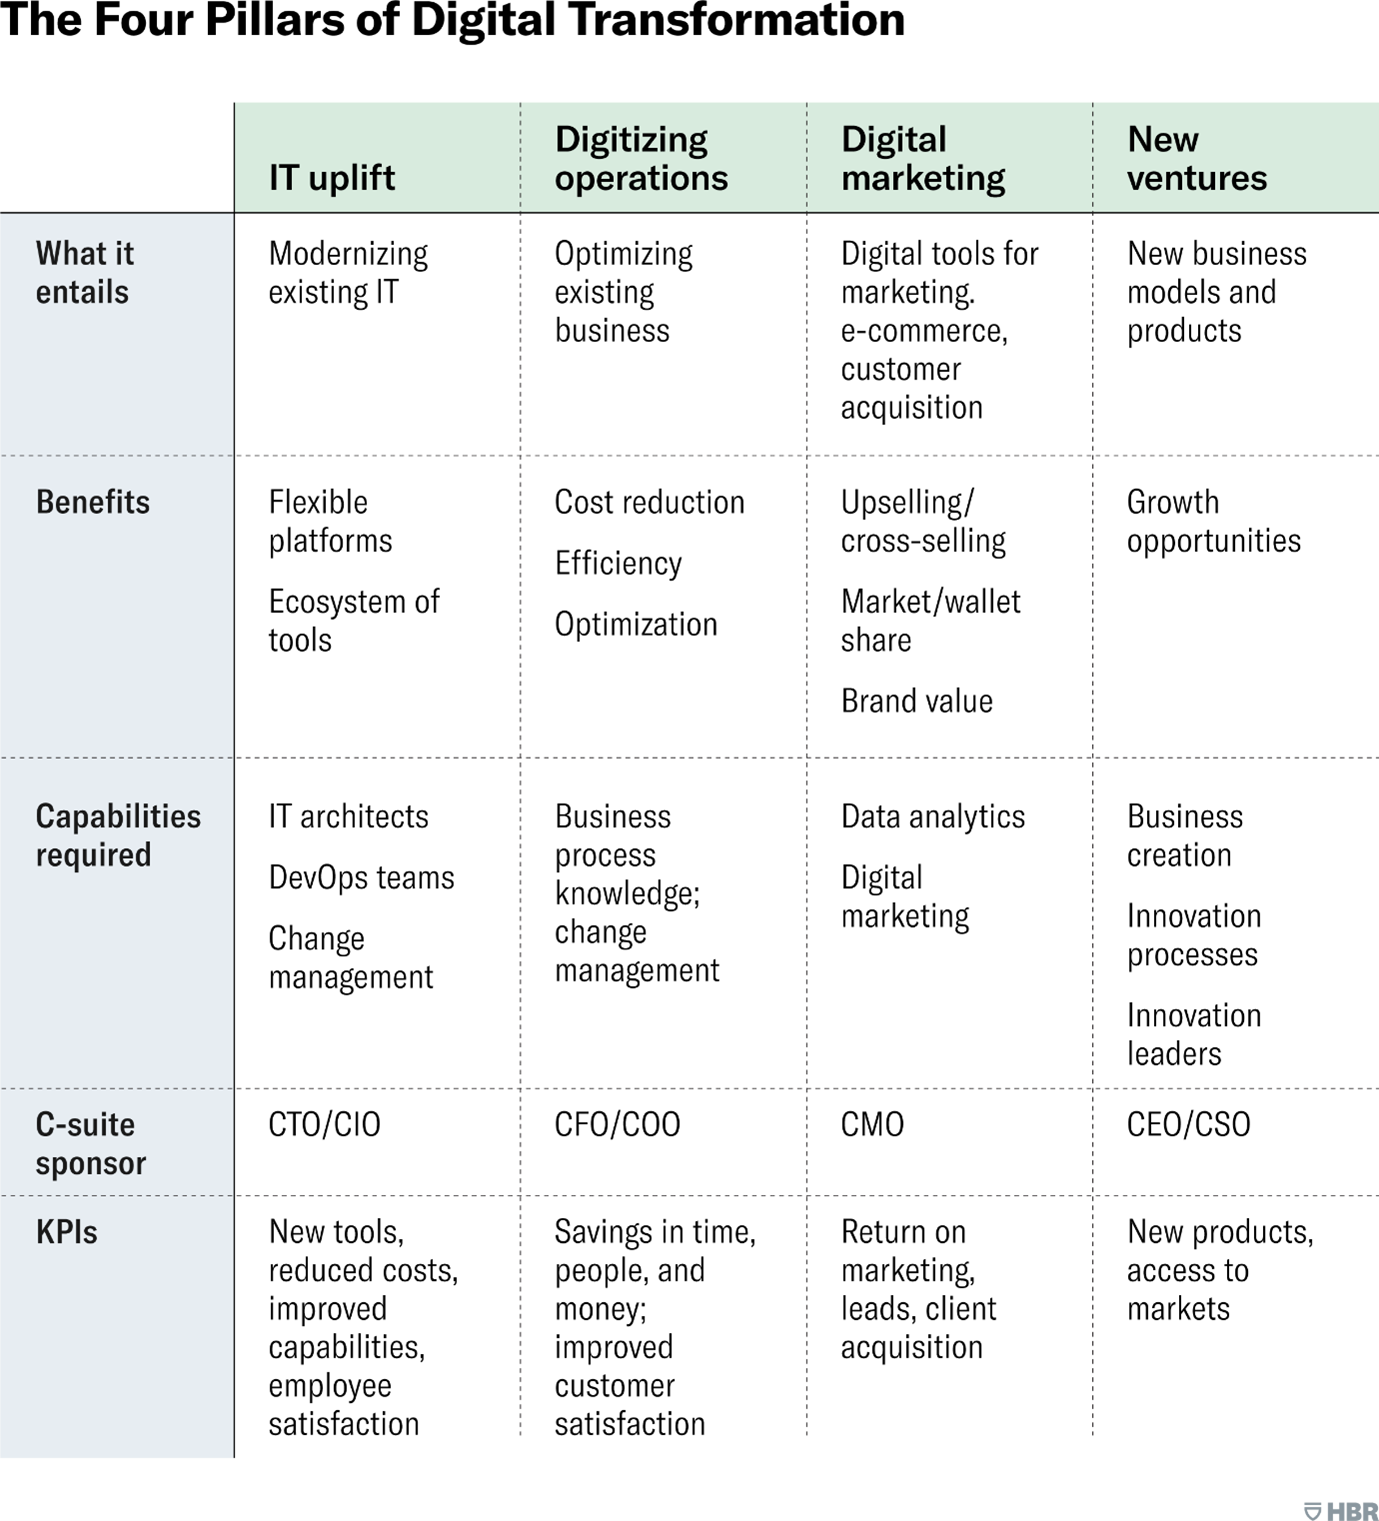 les principes de la transformation numérique dans un tableau